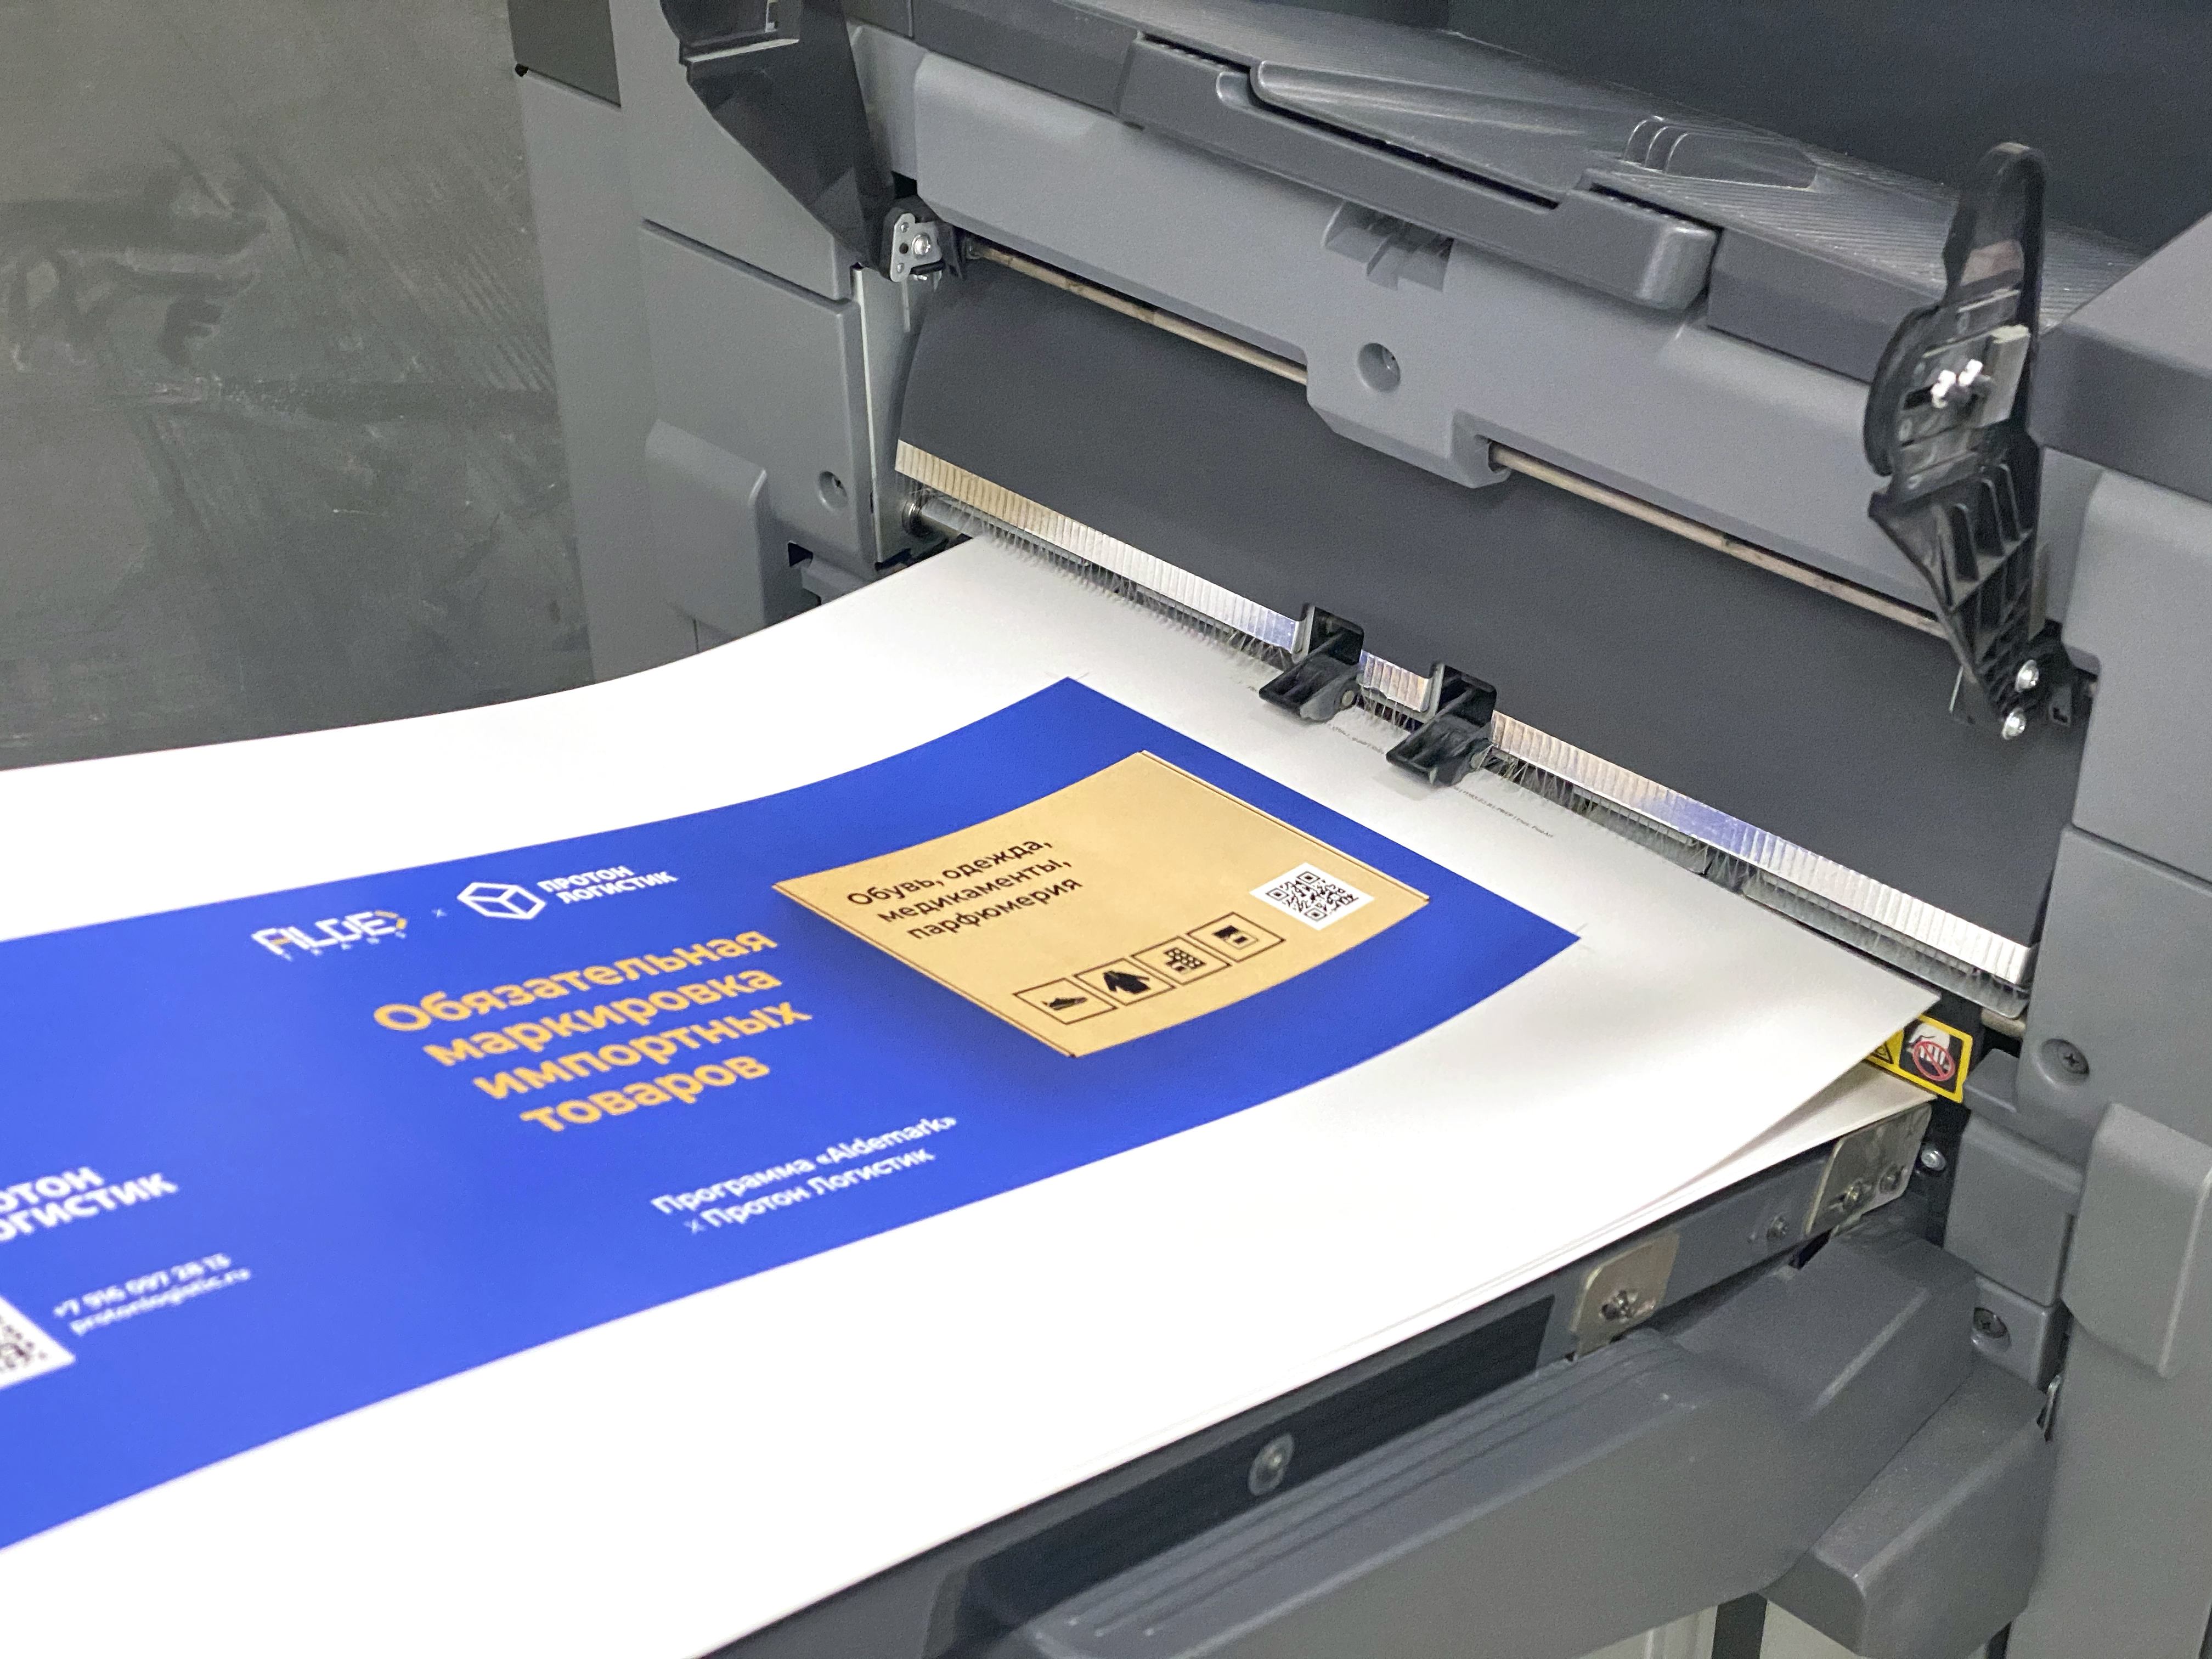 Цифровая печатначя машина KONICA MINOLTA